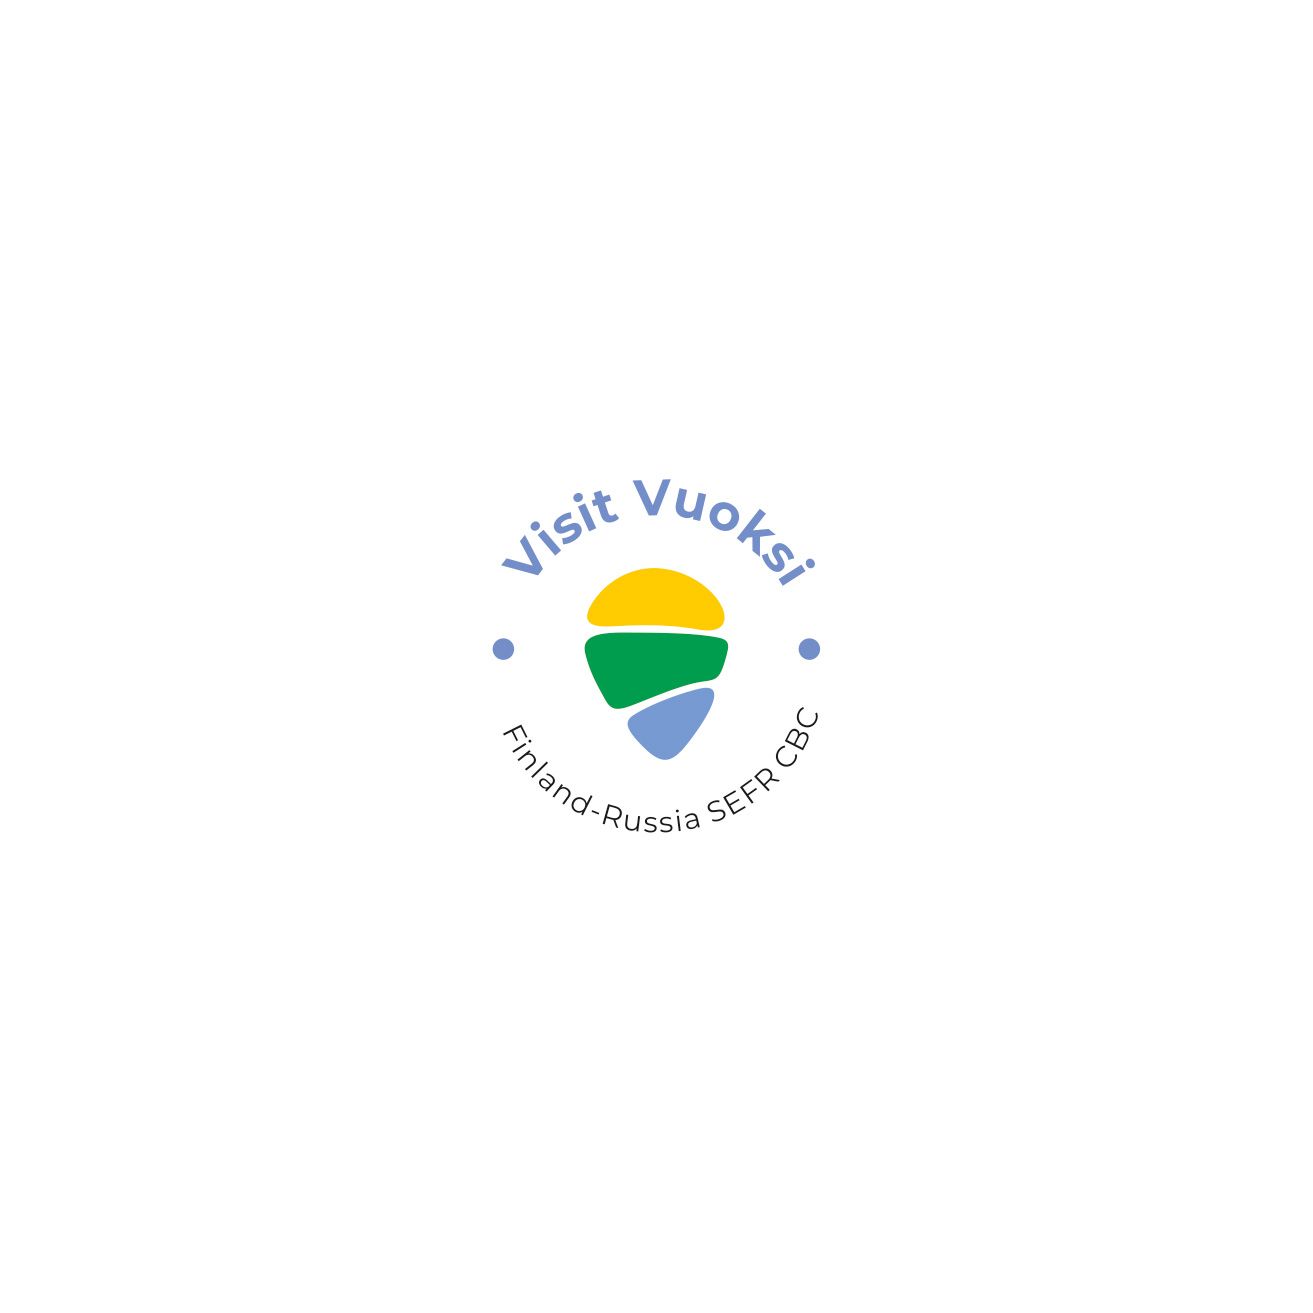 Логотип для ViVu/Visit Vuoksi. + (Finland-Russia/SEFR CBC) - дизайнер Avrora